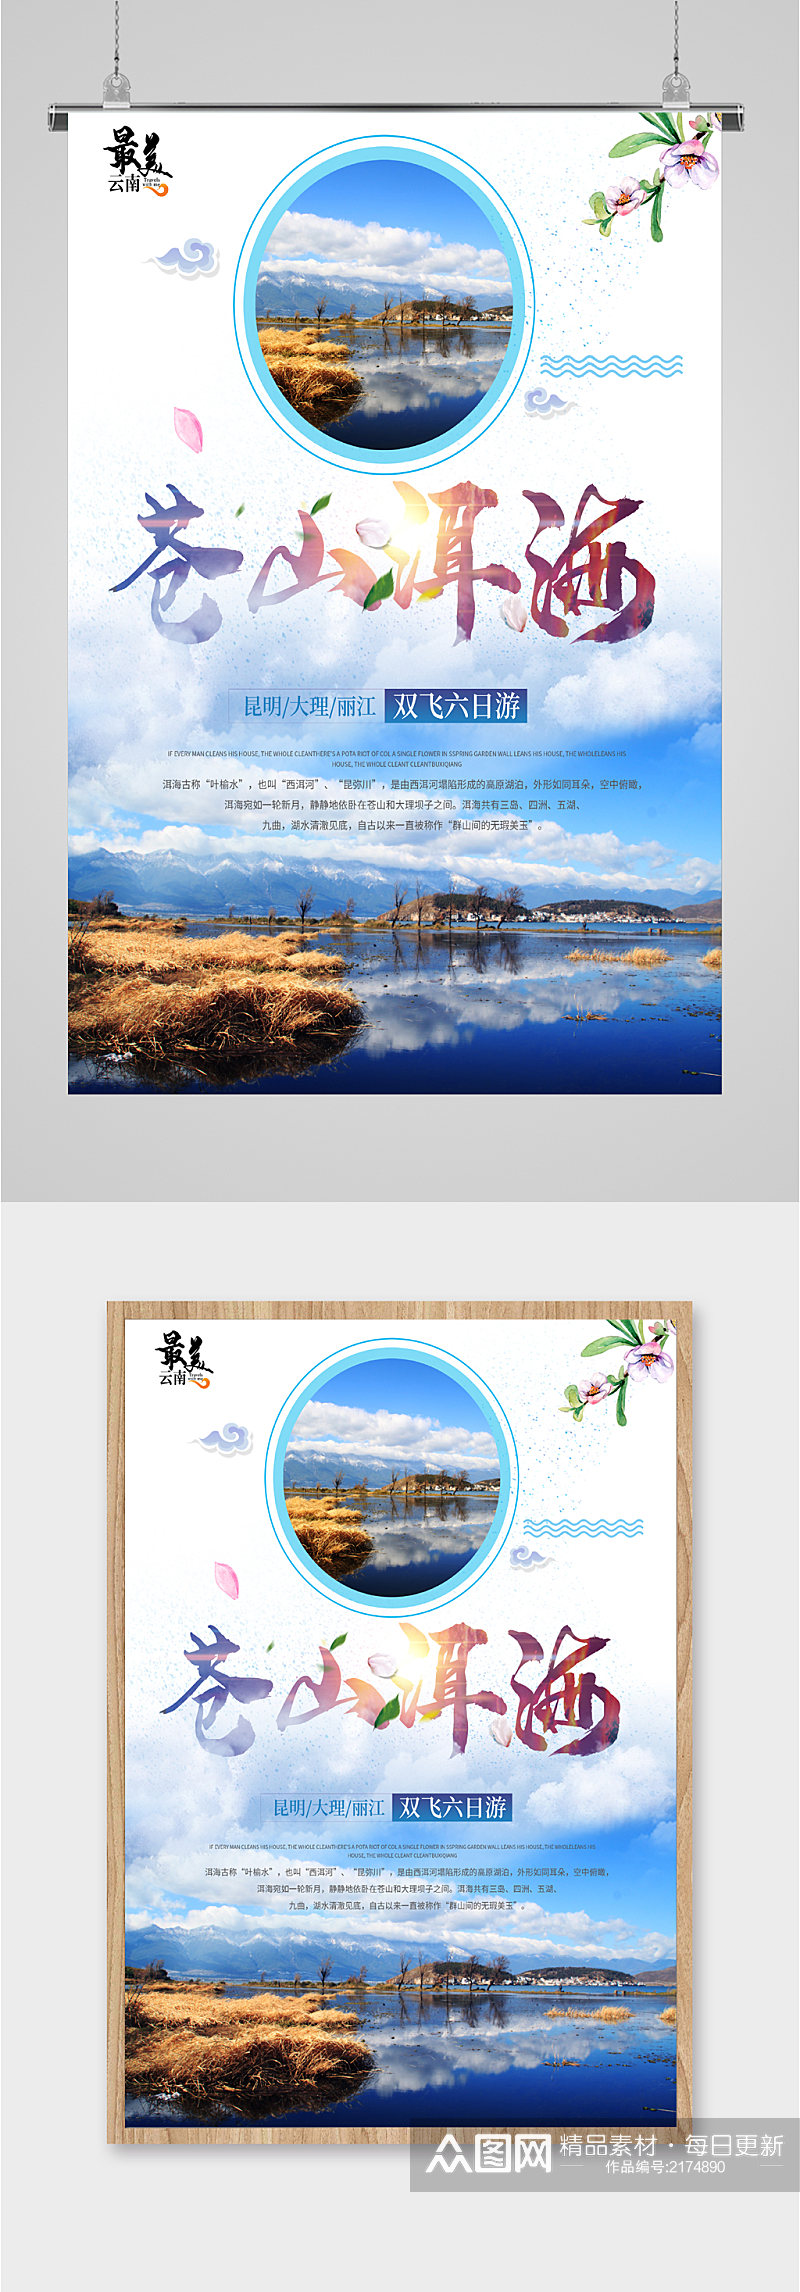 苍山洱海旅游海报素材